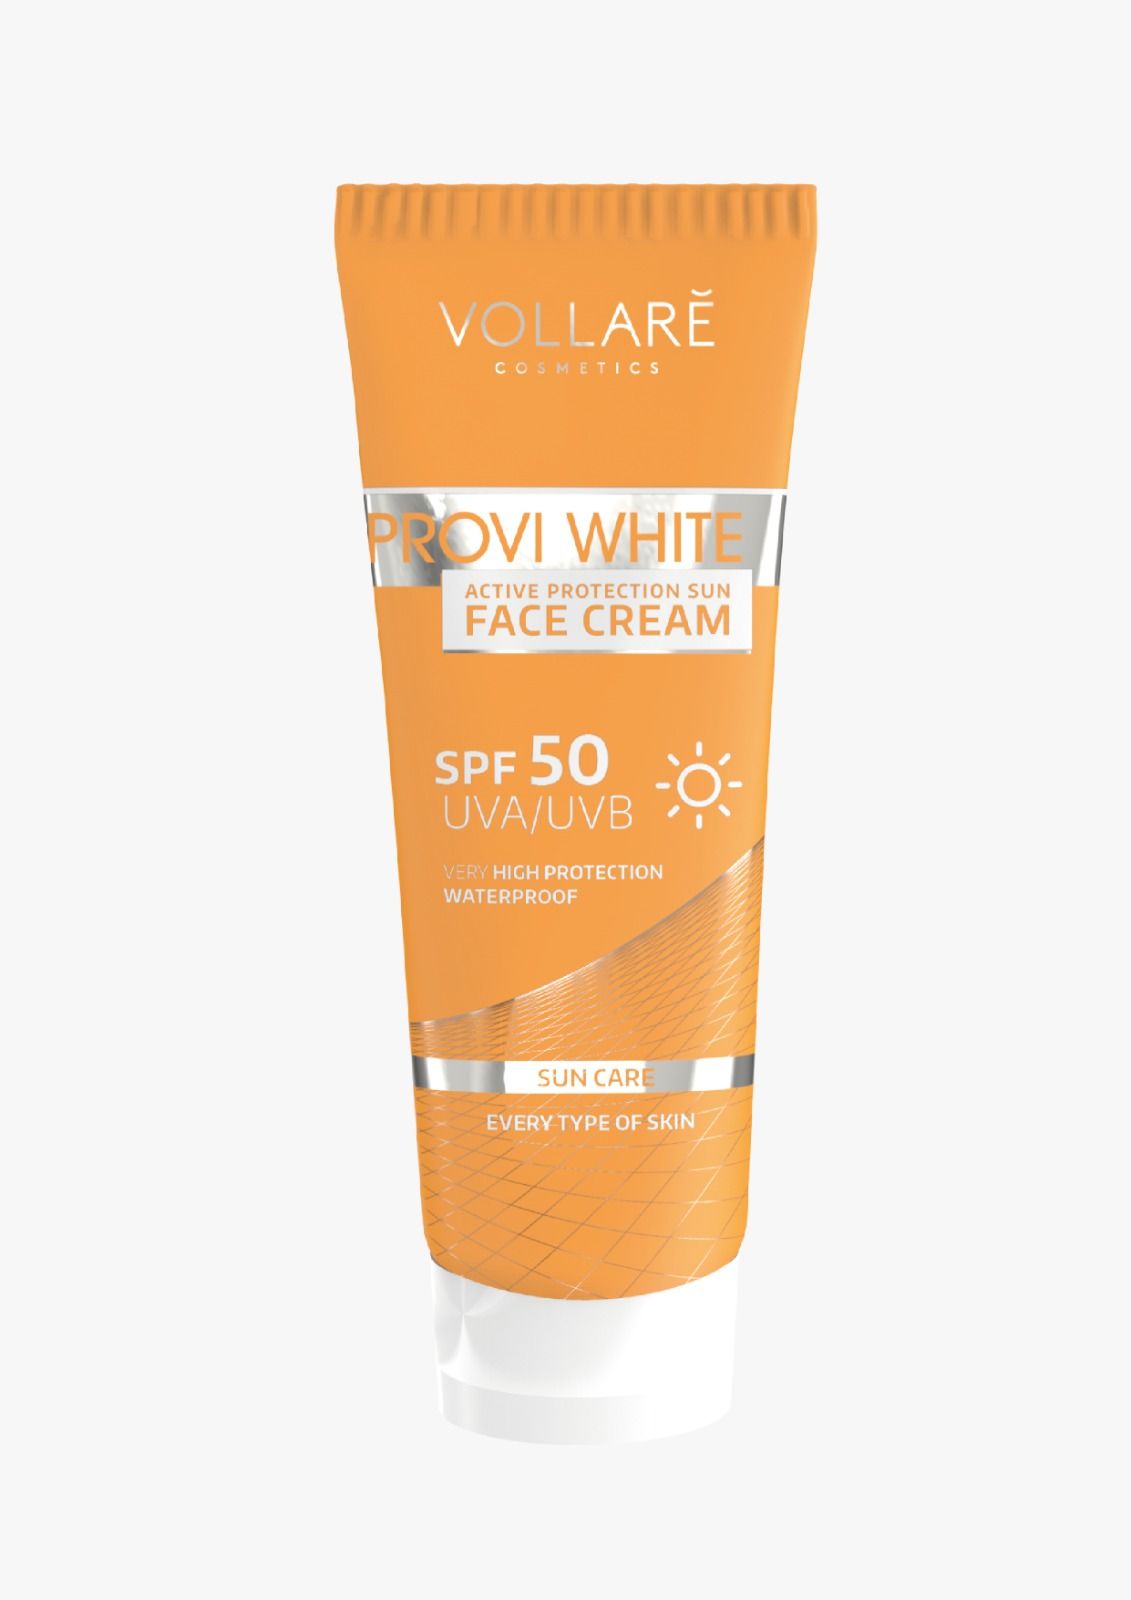 VOLLARE Provi White Active Protection Sun Face Cream SPF 50 UVA/UVB